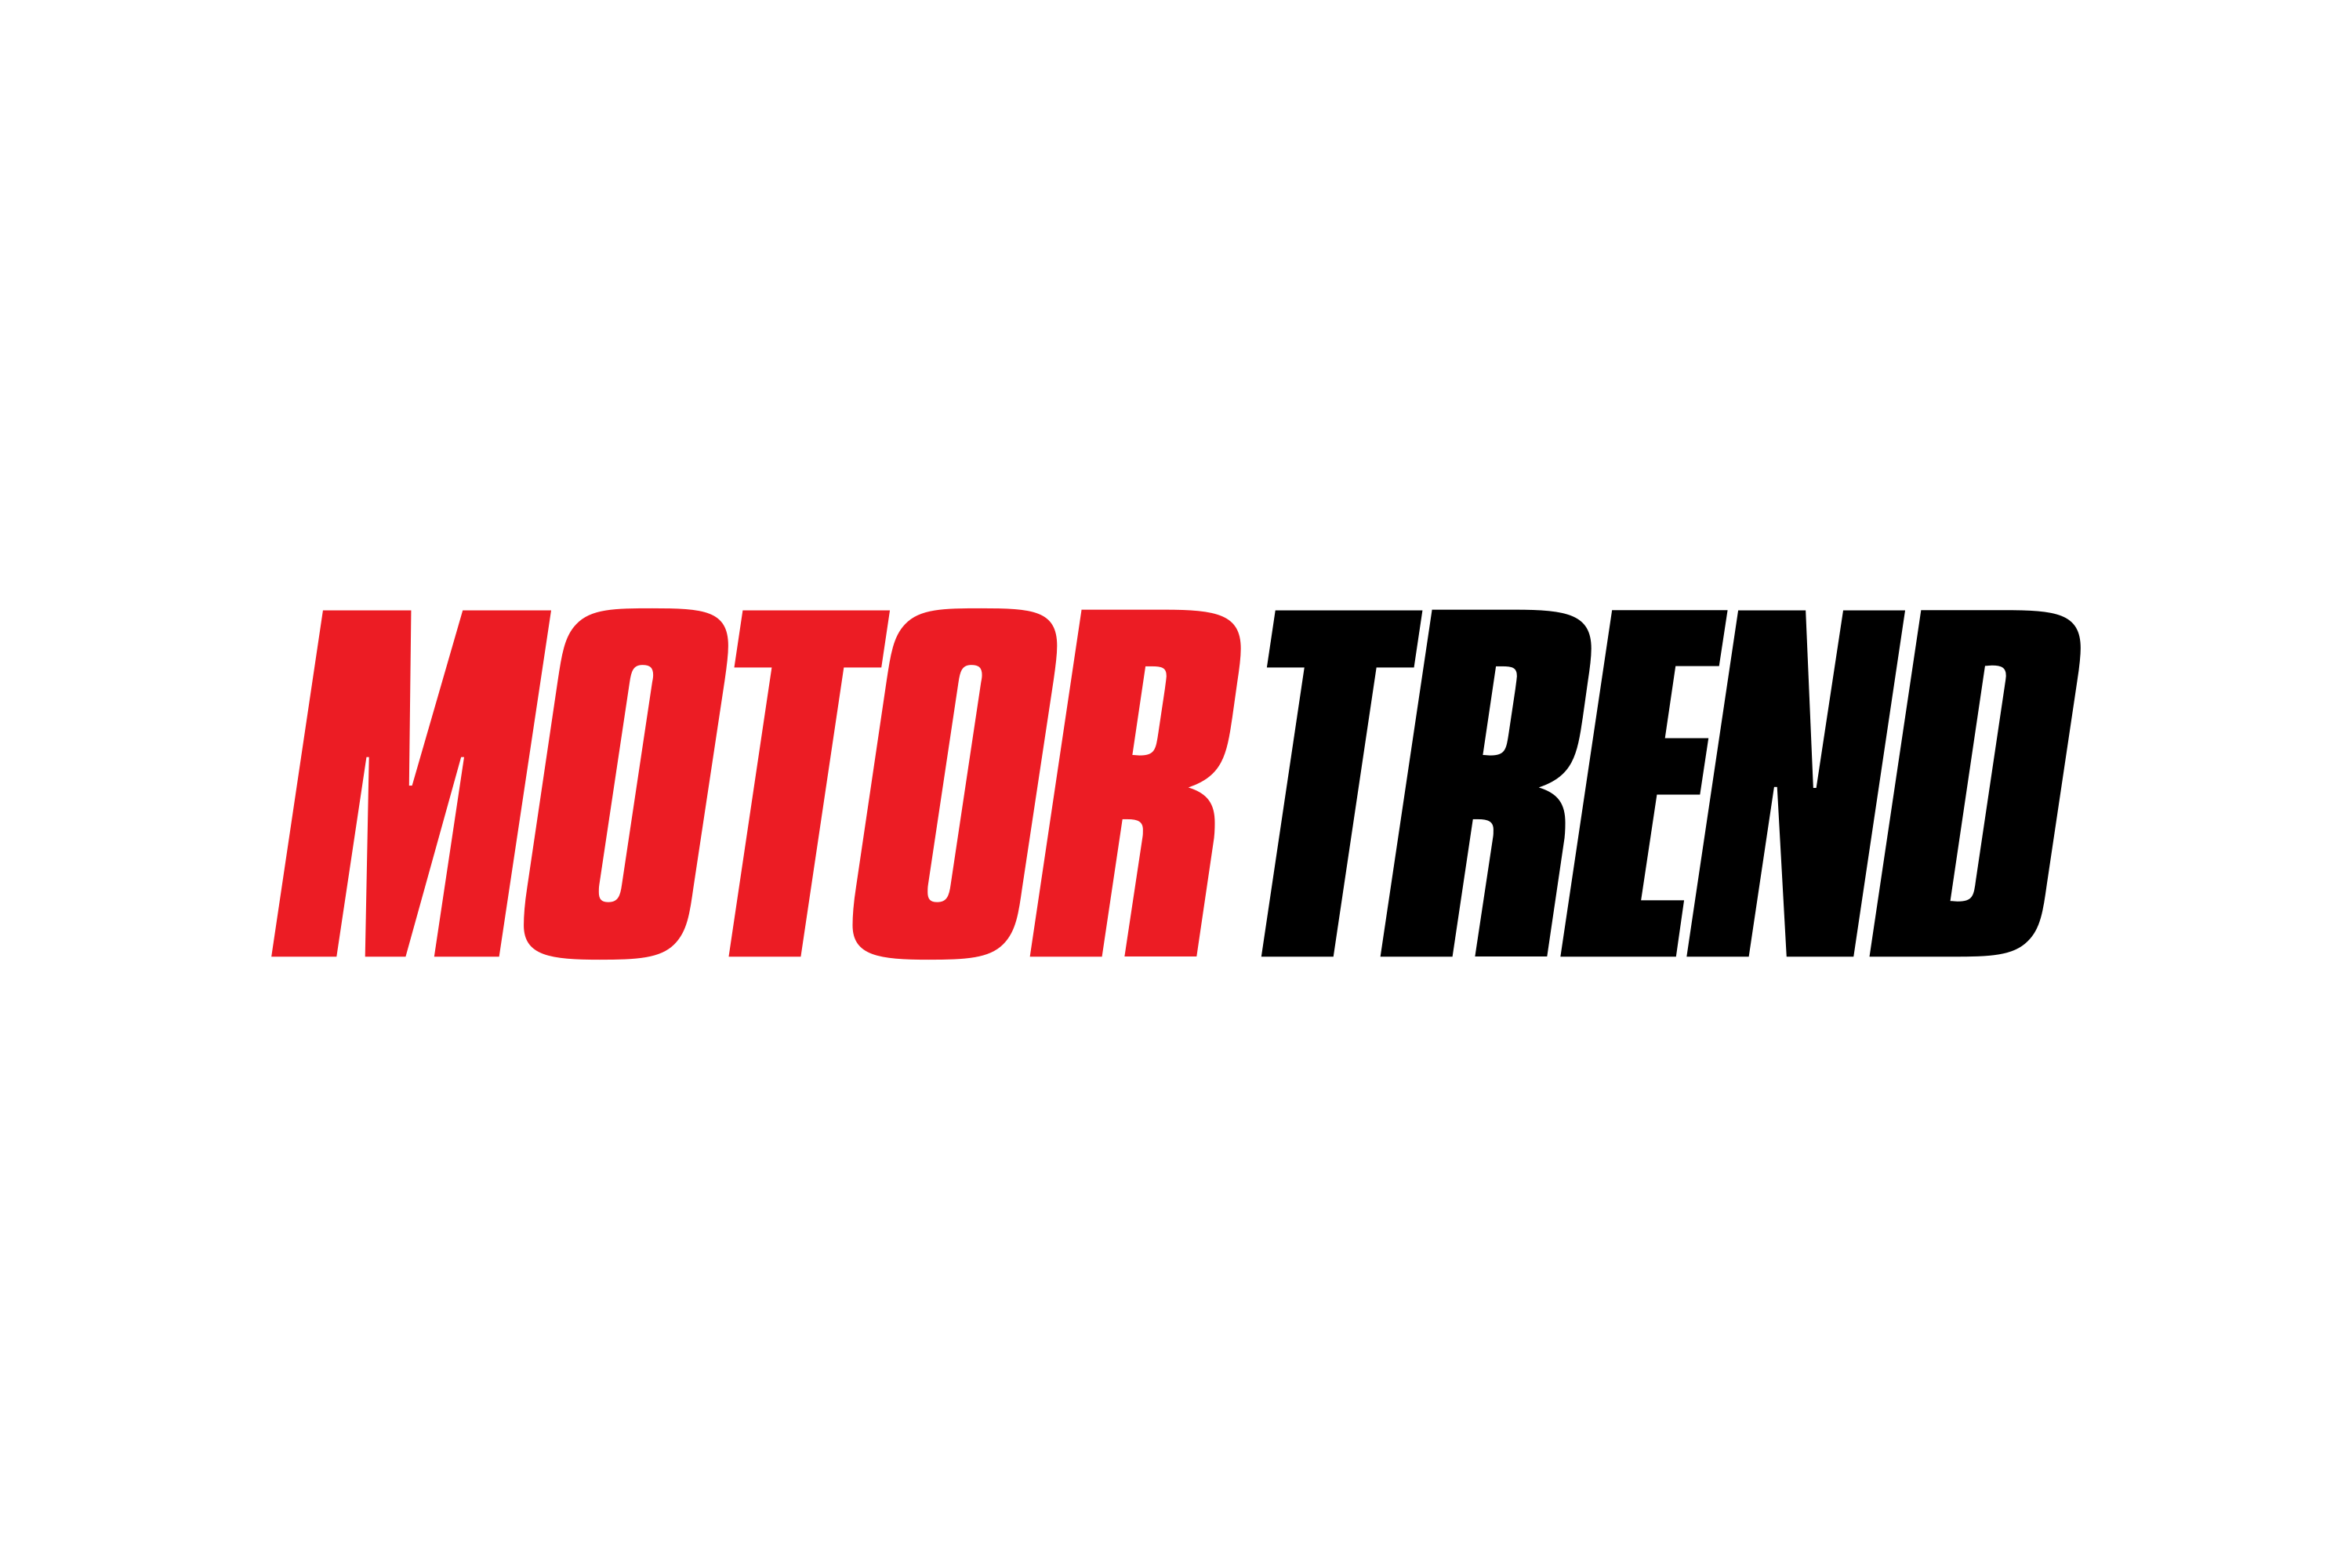 Download Motor Trend Logo in SVG Vector or PNG File Format - Logo.wine